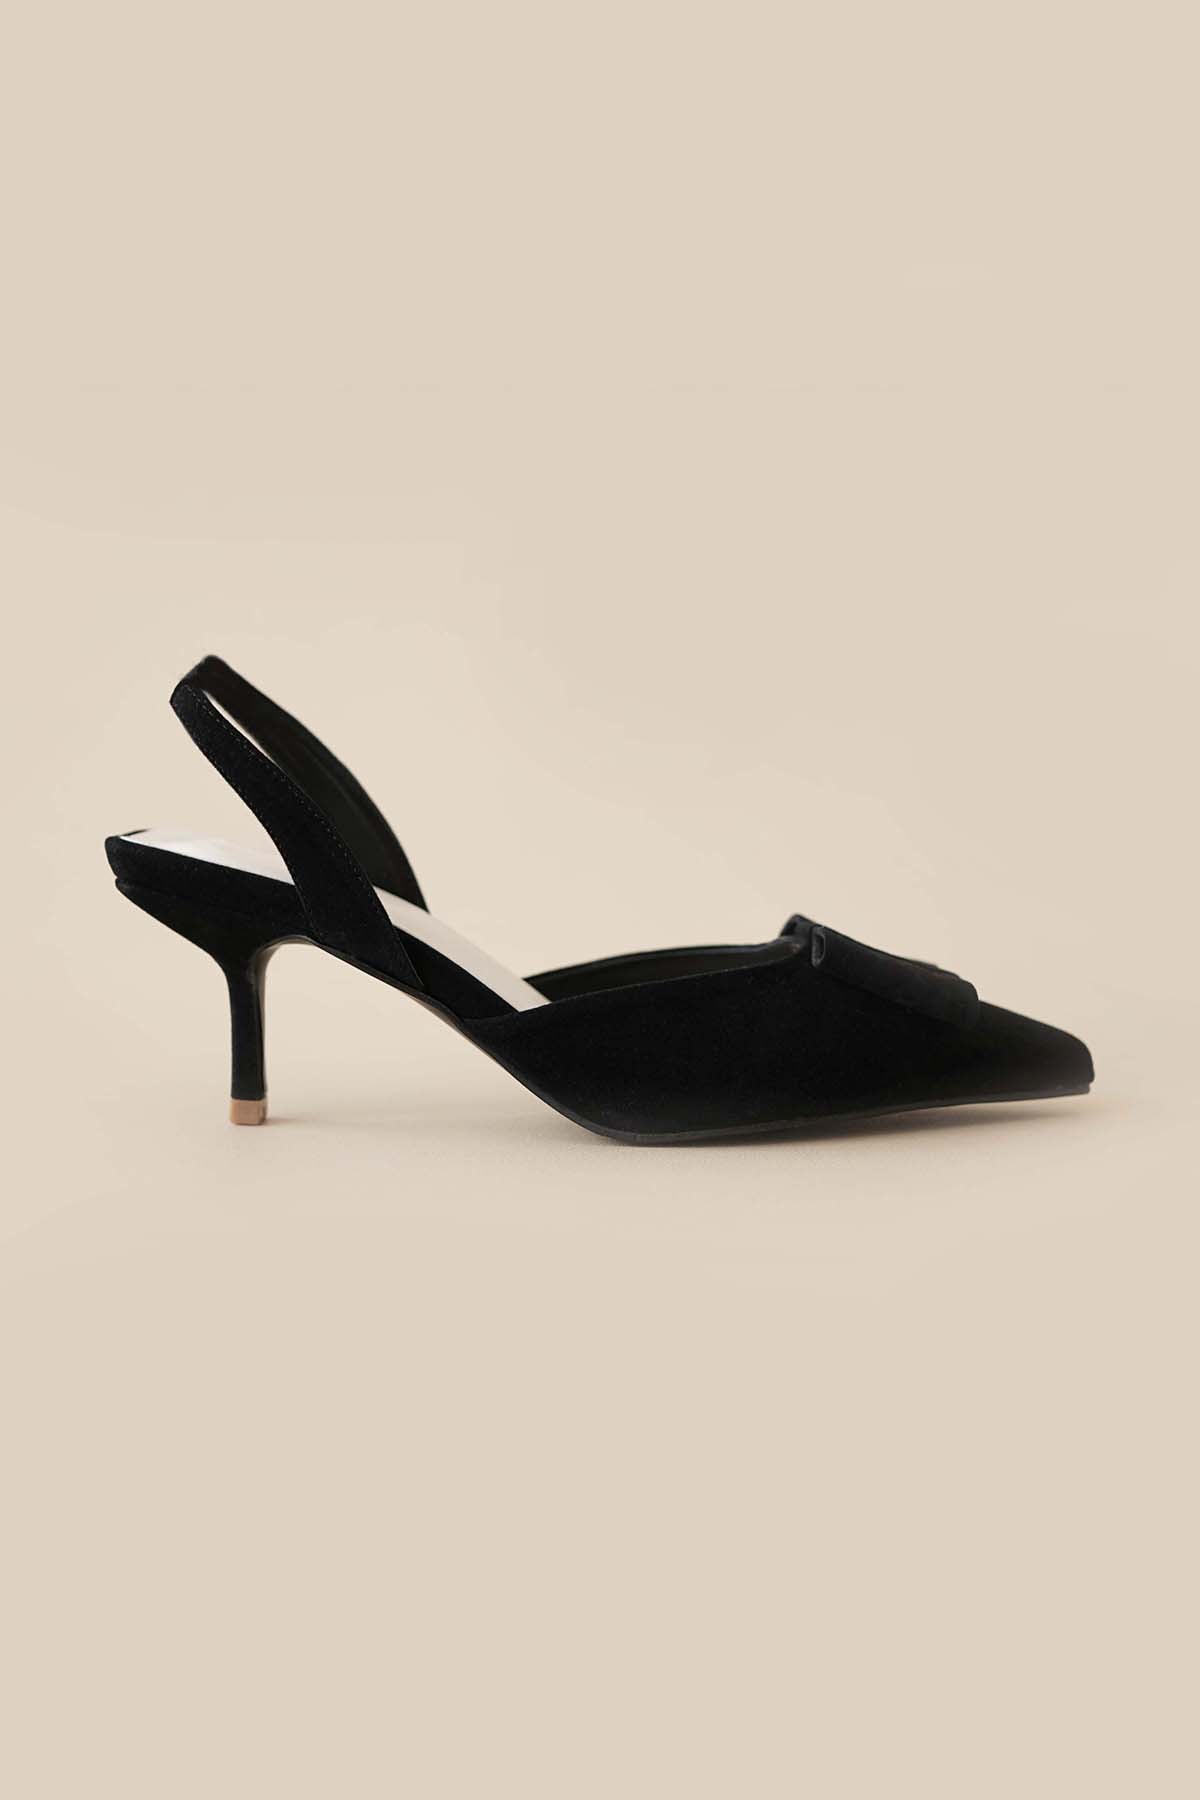 Gilena Heels in Black